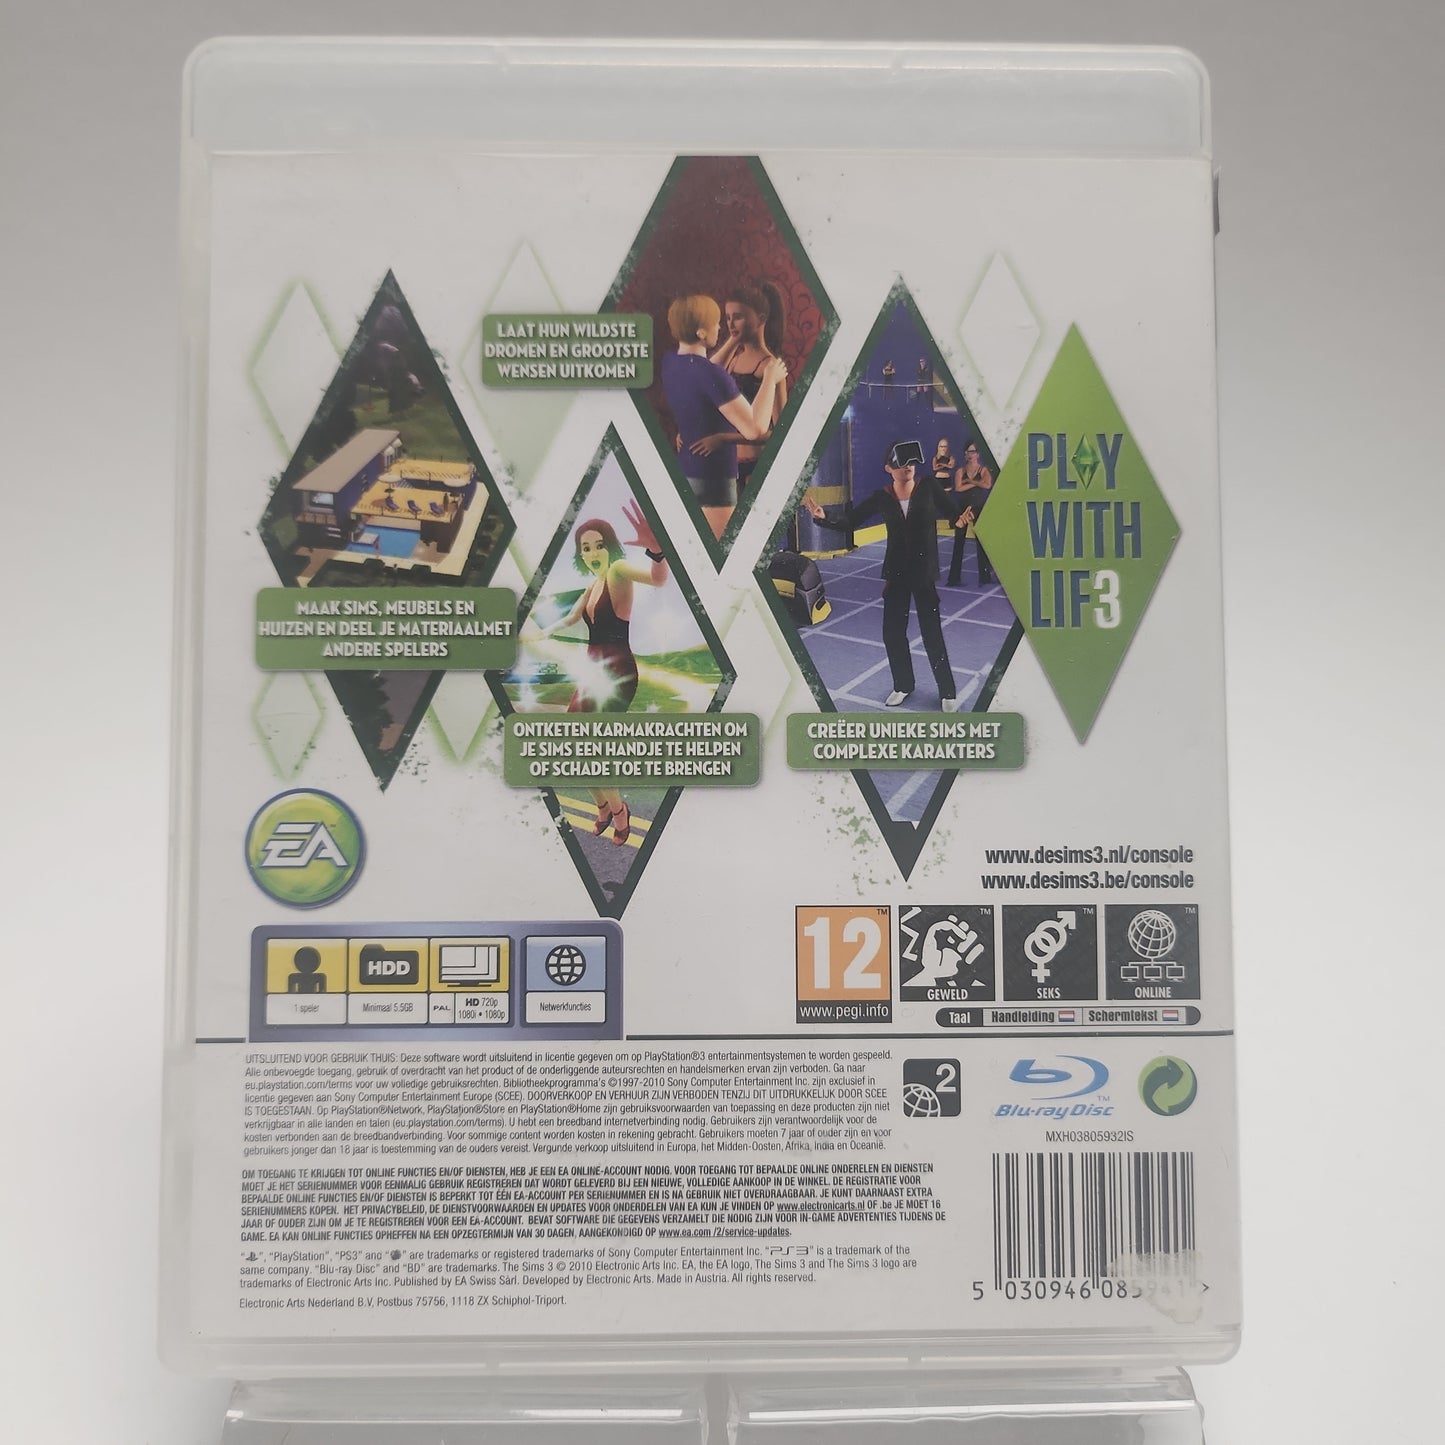 Sims 3 Playstation 3